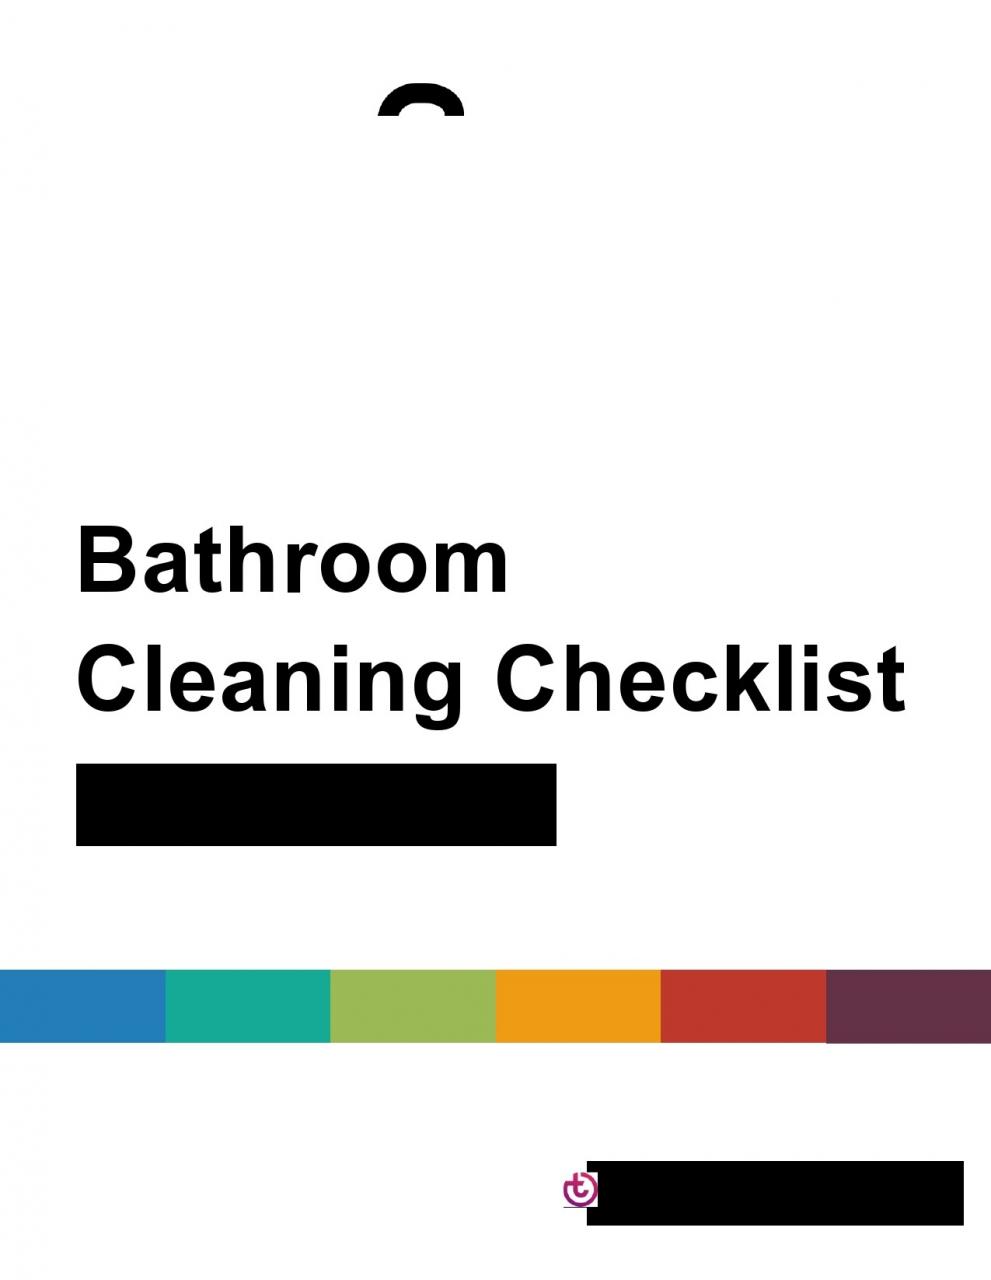 Lista de verificación de limpieza de baño gratis 25